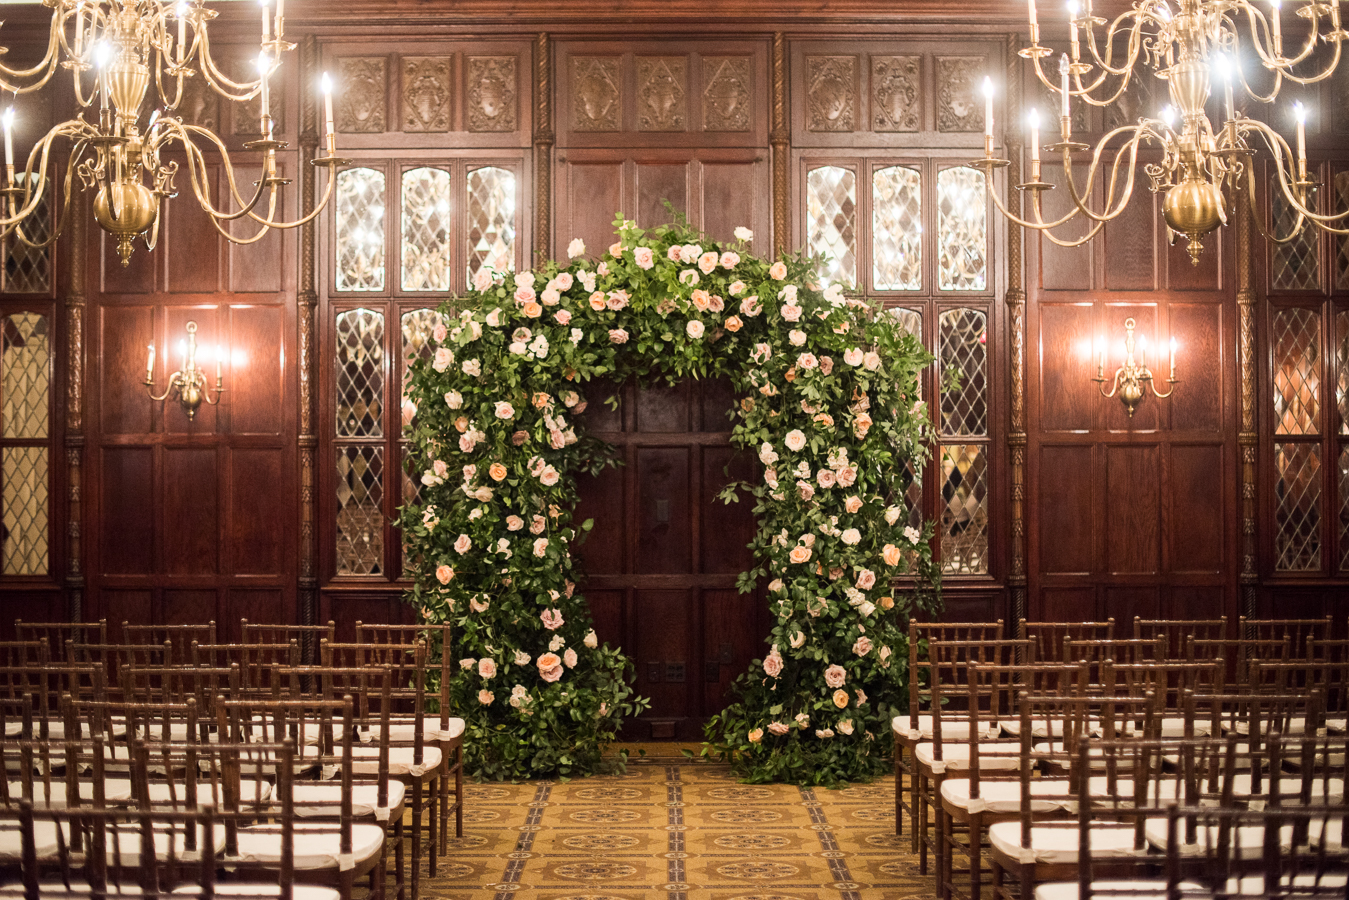 Wedding Ceremony Floral Arch at Hay Adams in Washington, DC